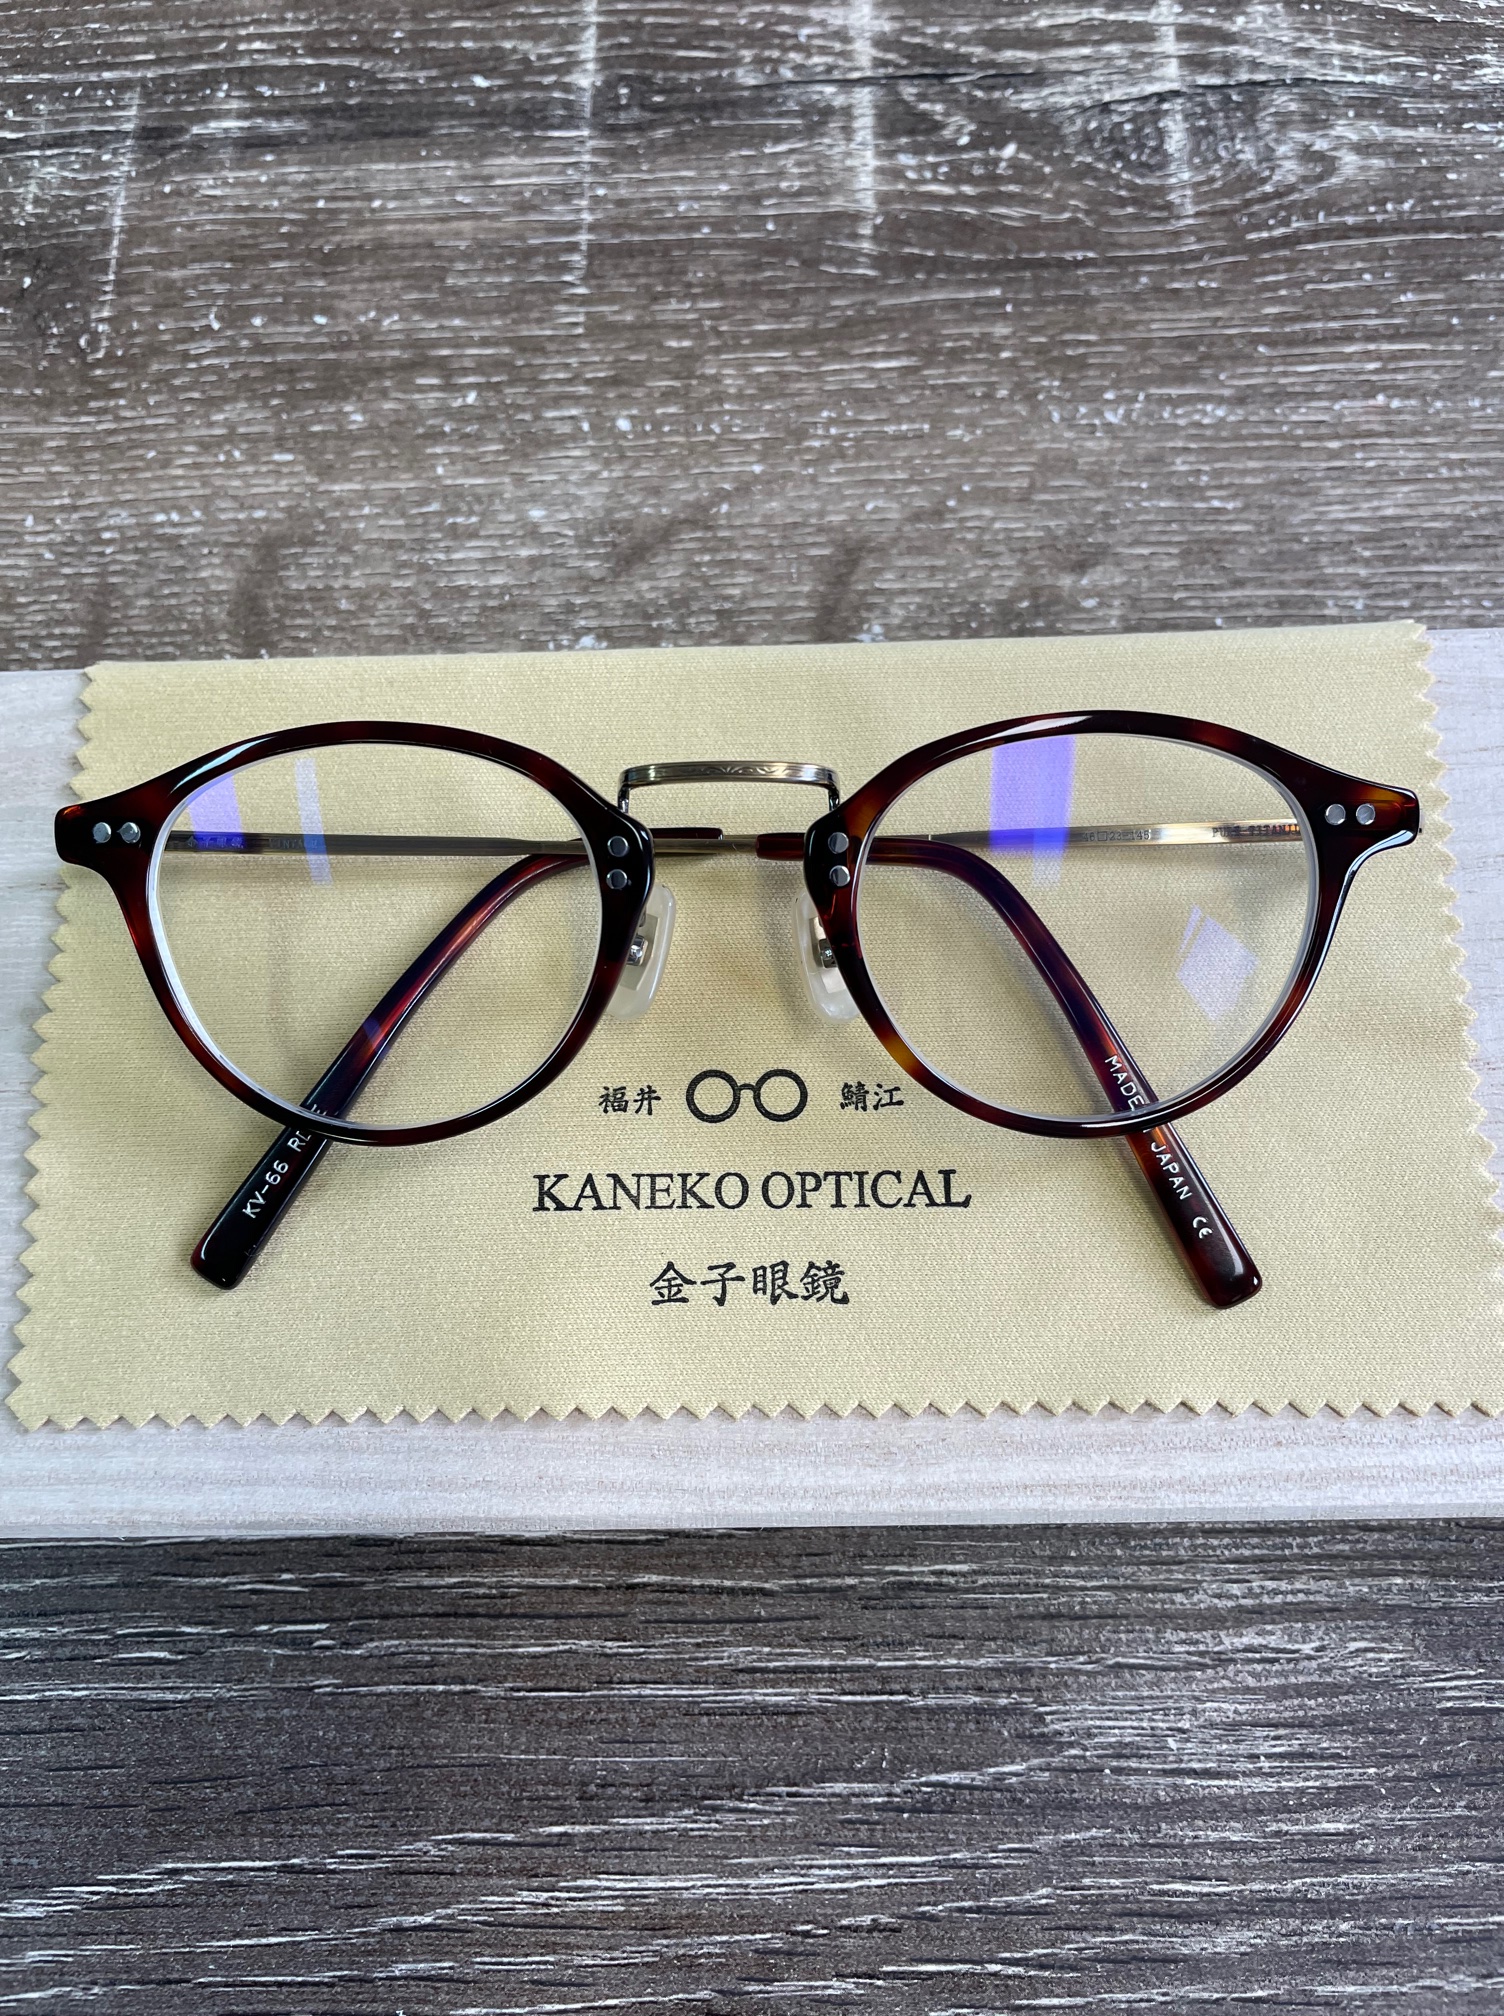 金子眼鏡で普段使いする”おしゃれメガネ”を作成しよう【KV‐66】 | うぇるびぶ